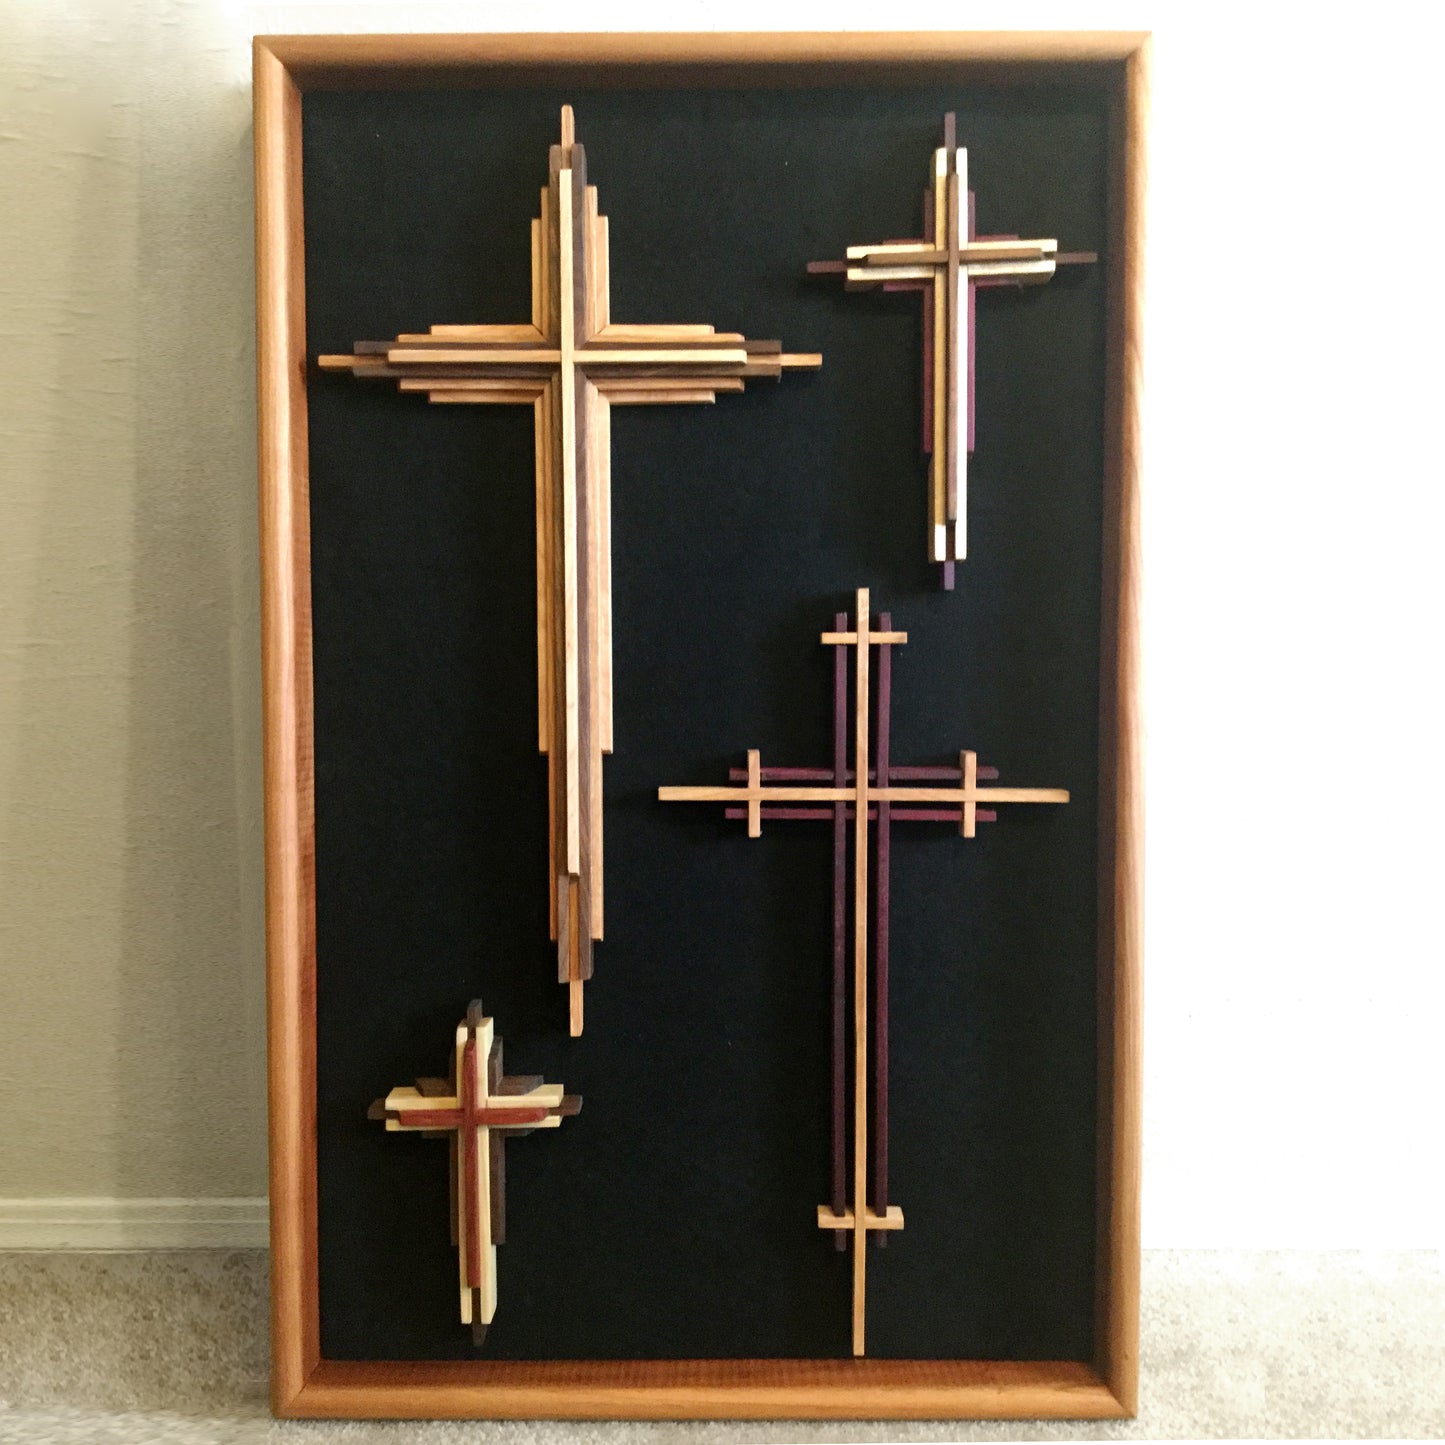 Framed Wooden Crosses